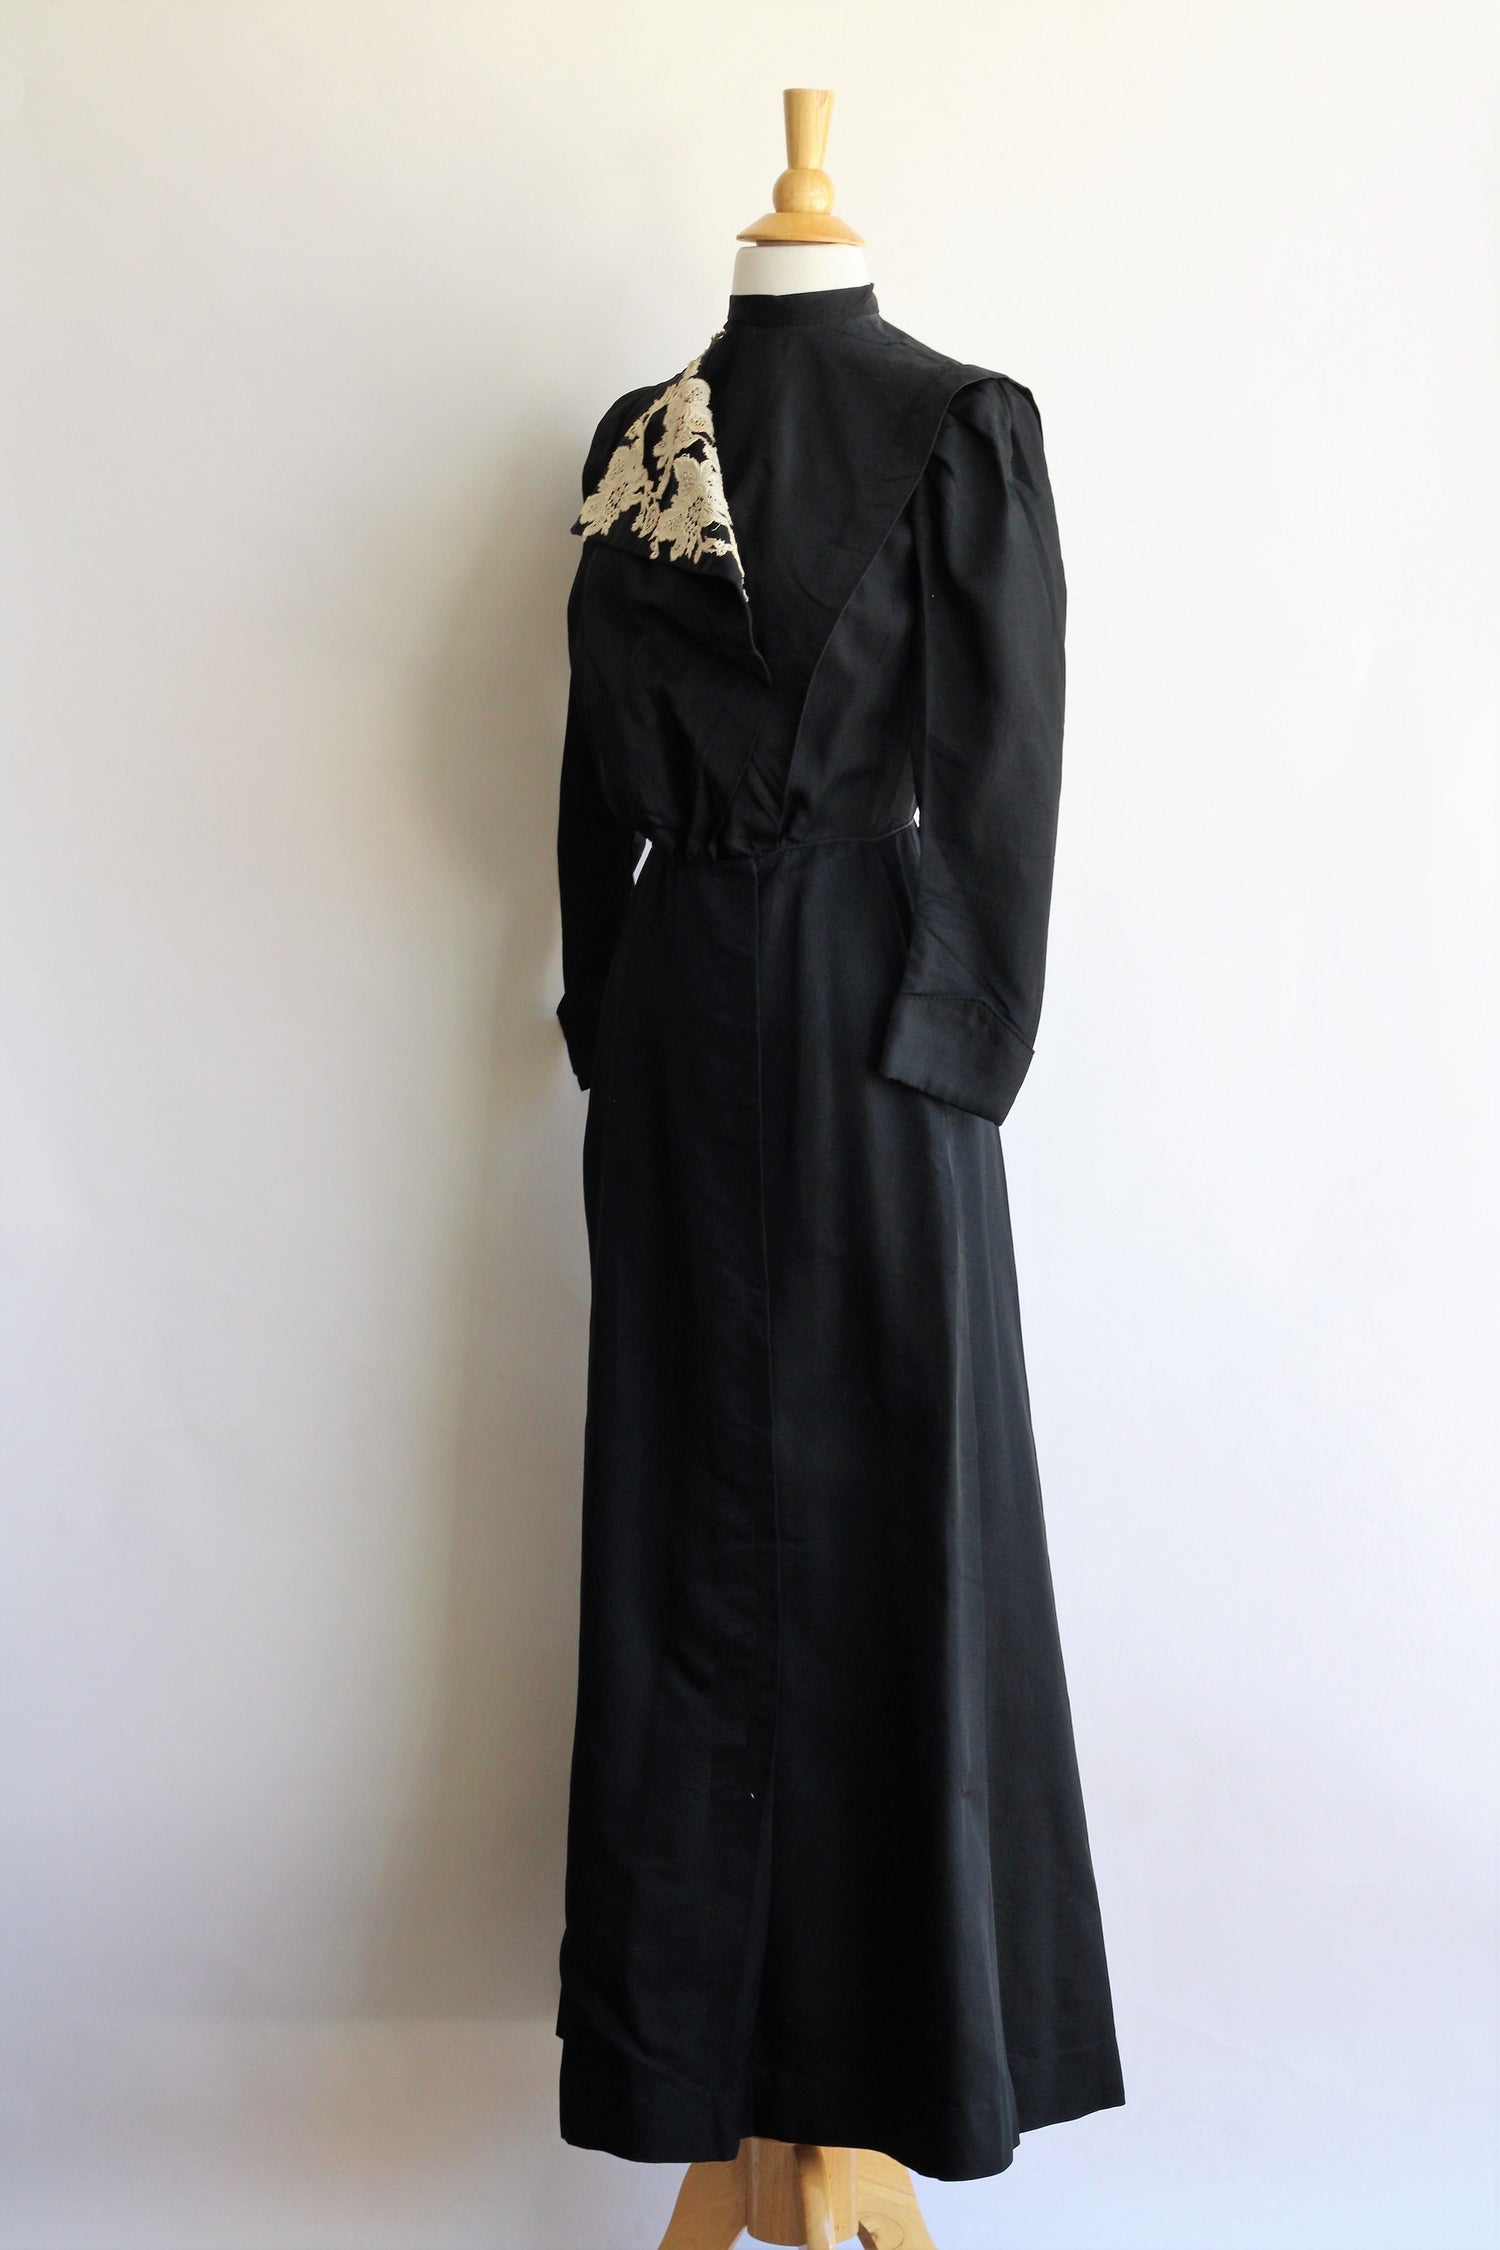 Antique 1900s Edwardian Mourning Dress